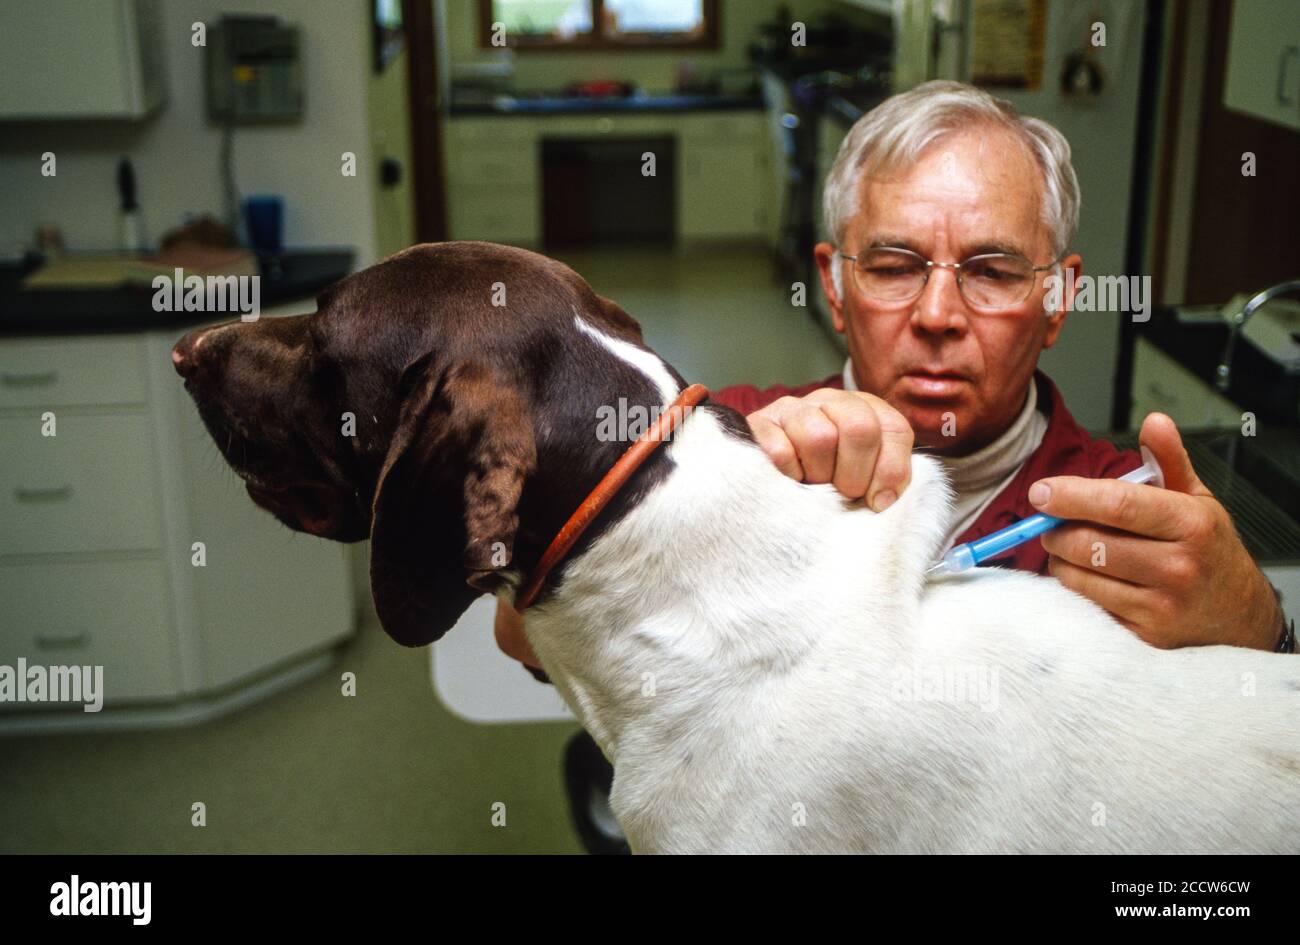 Microchip Insertion in Dog durch Tierarzt, um sicherzustellen, dass die richtige Identifizierung von Tier, wenn verloren. Dyersville, Iowa, USA. Stockfoto